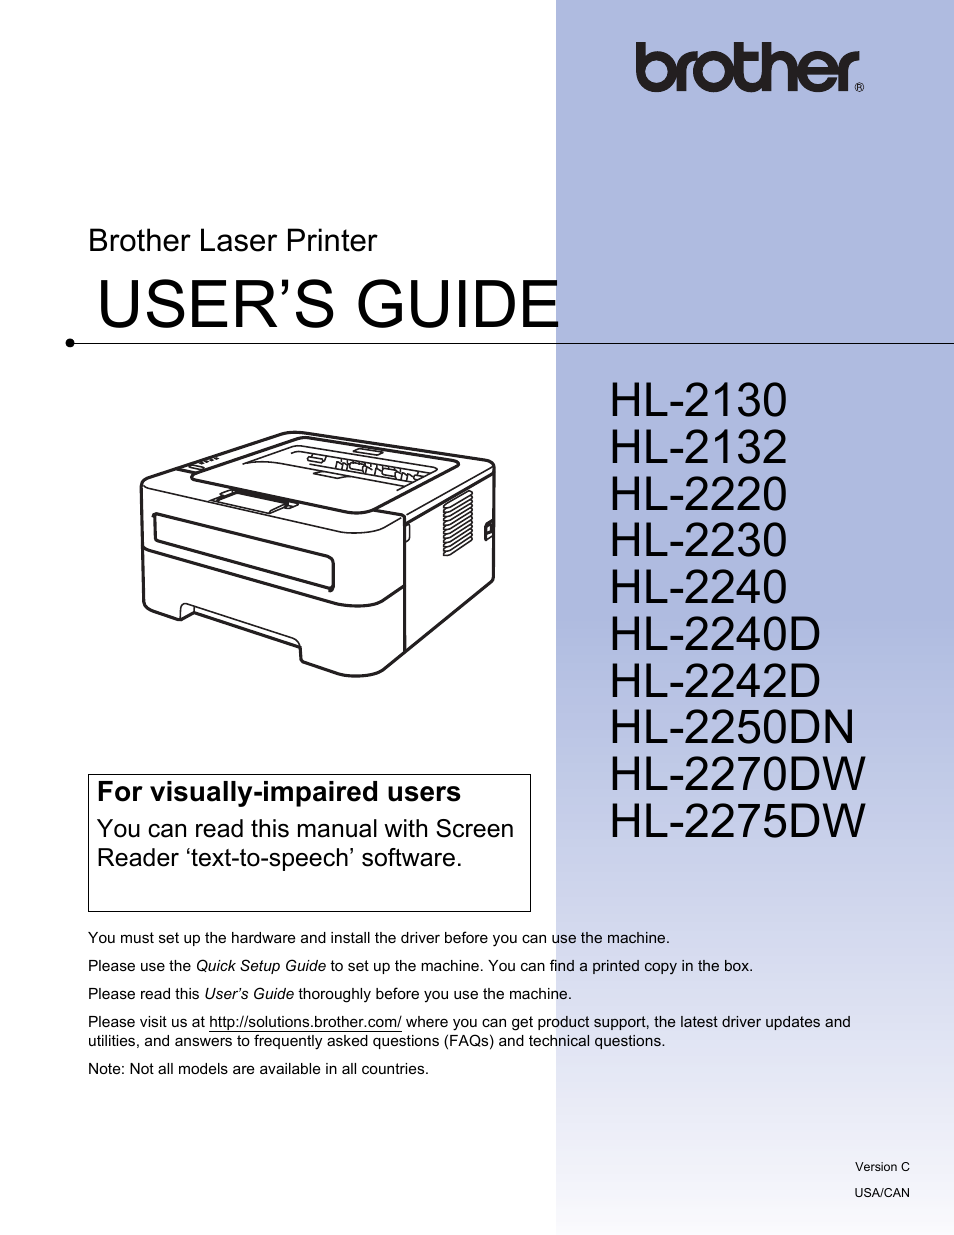 smeltet Kontinent albue Brother HL 2270DW User Manual | 150 pages | Also for: HL-2275DW, HL 2220, HL  2240D, HL-2230, HL-2240, HL-2130, HL-2132, HL-2242D, HL-2250DN